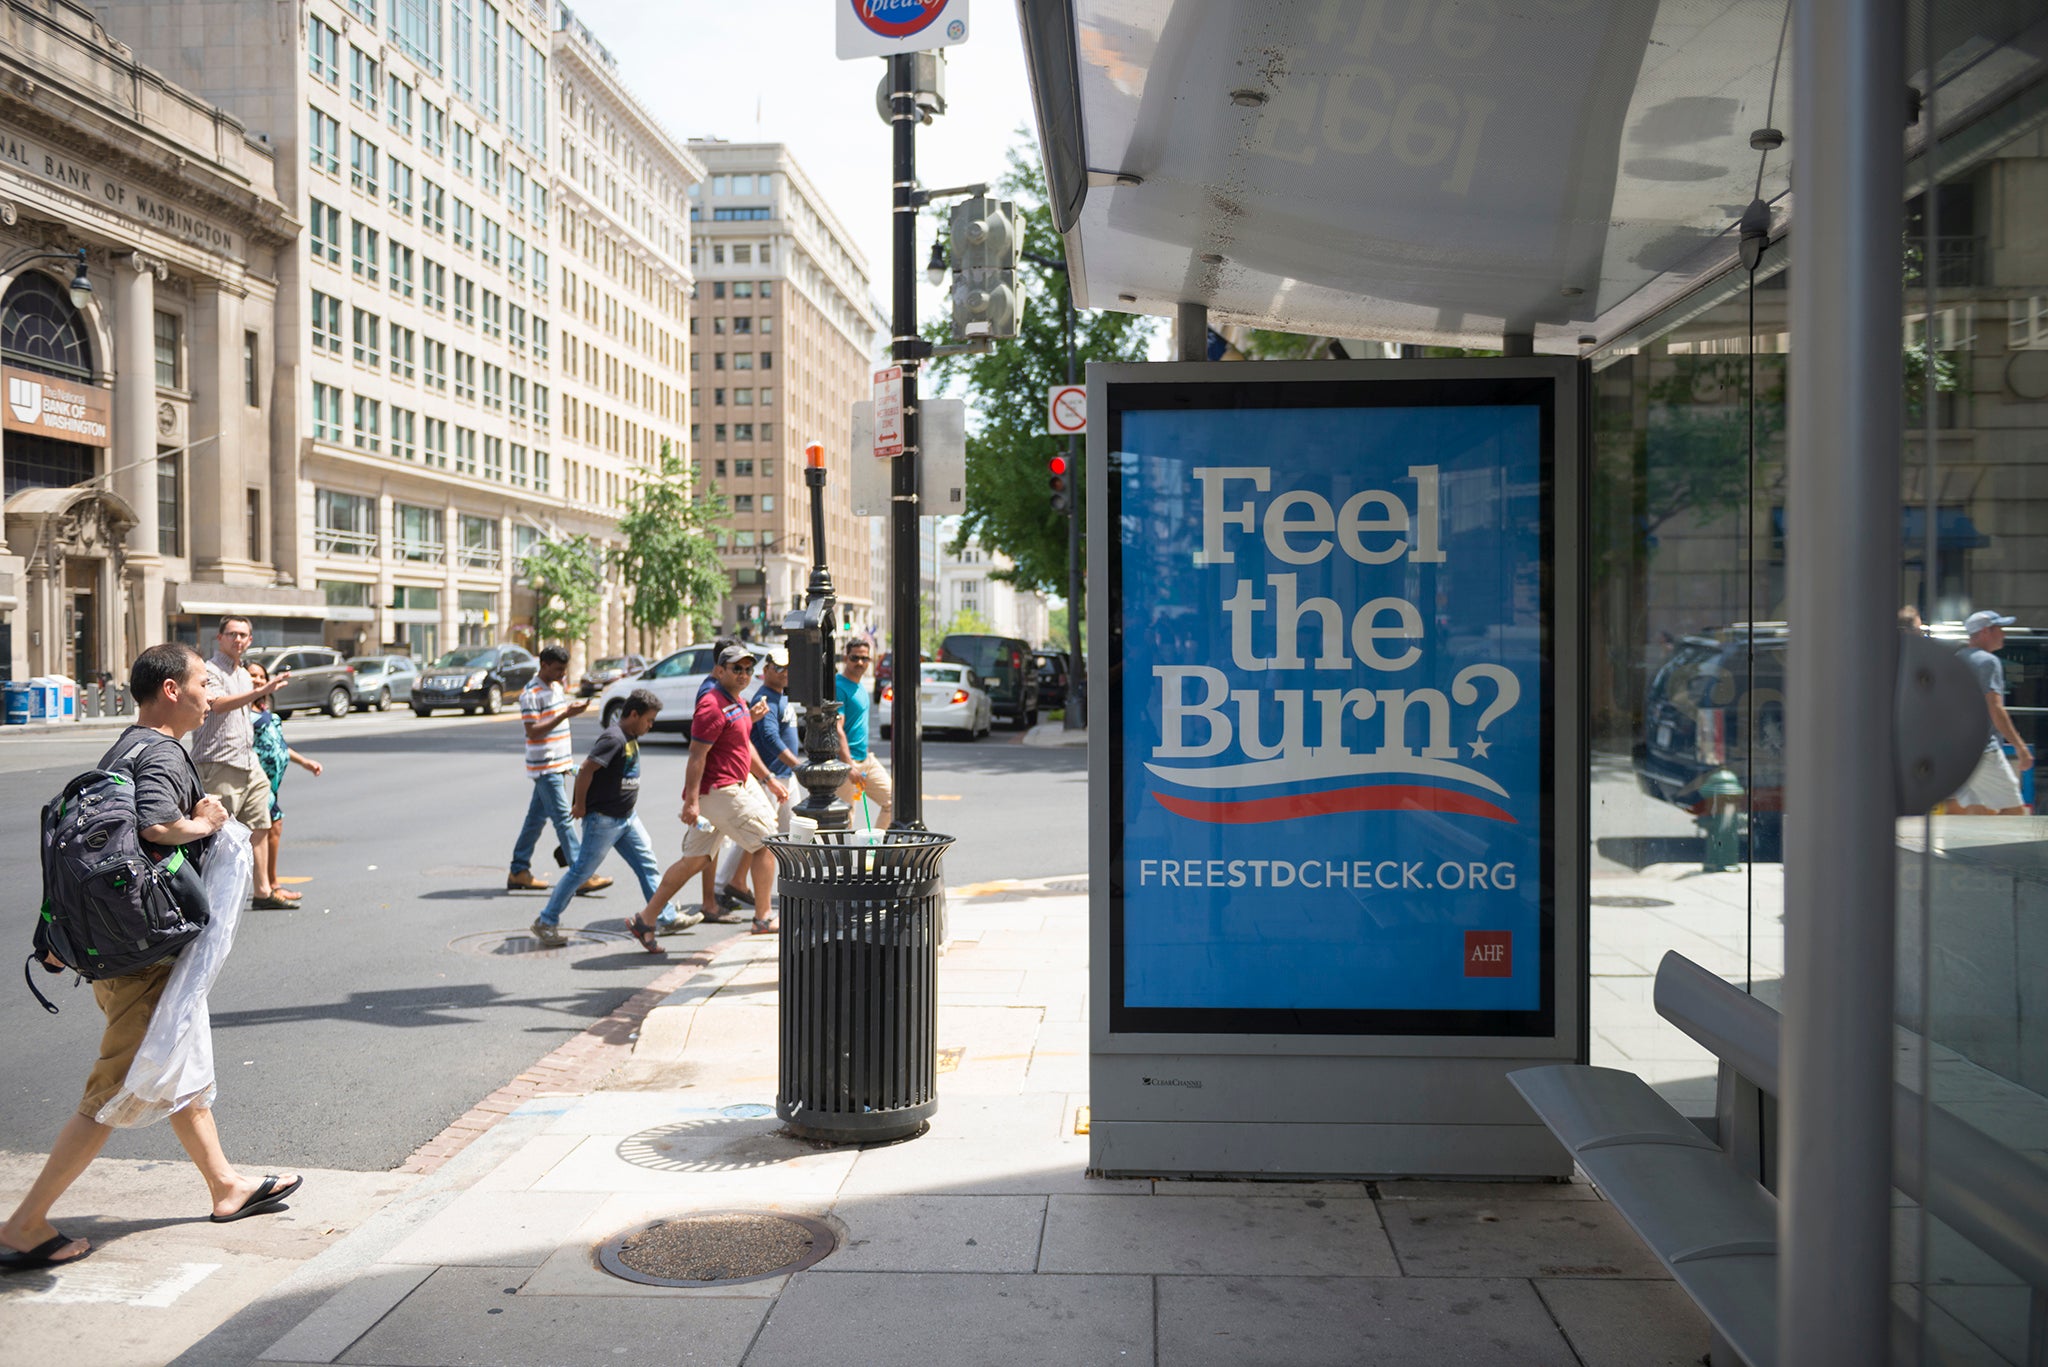 A poster in Washington DC advertising free STI tests